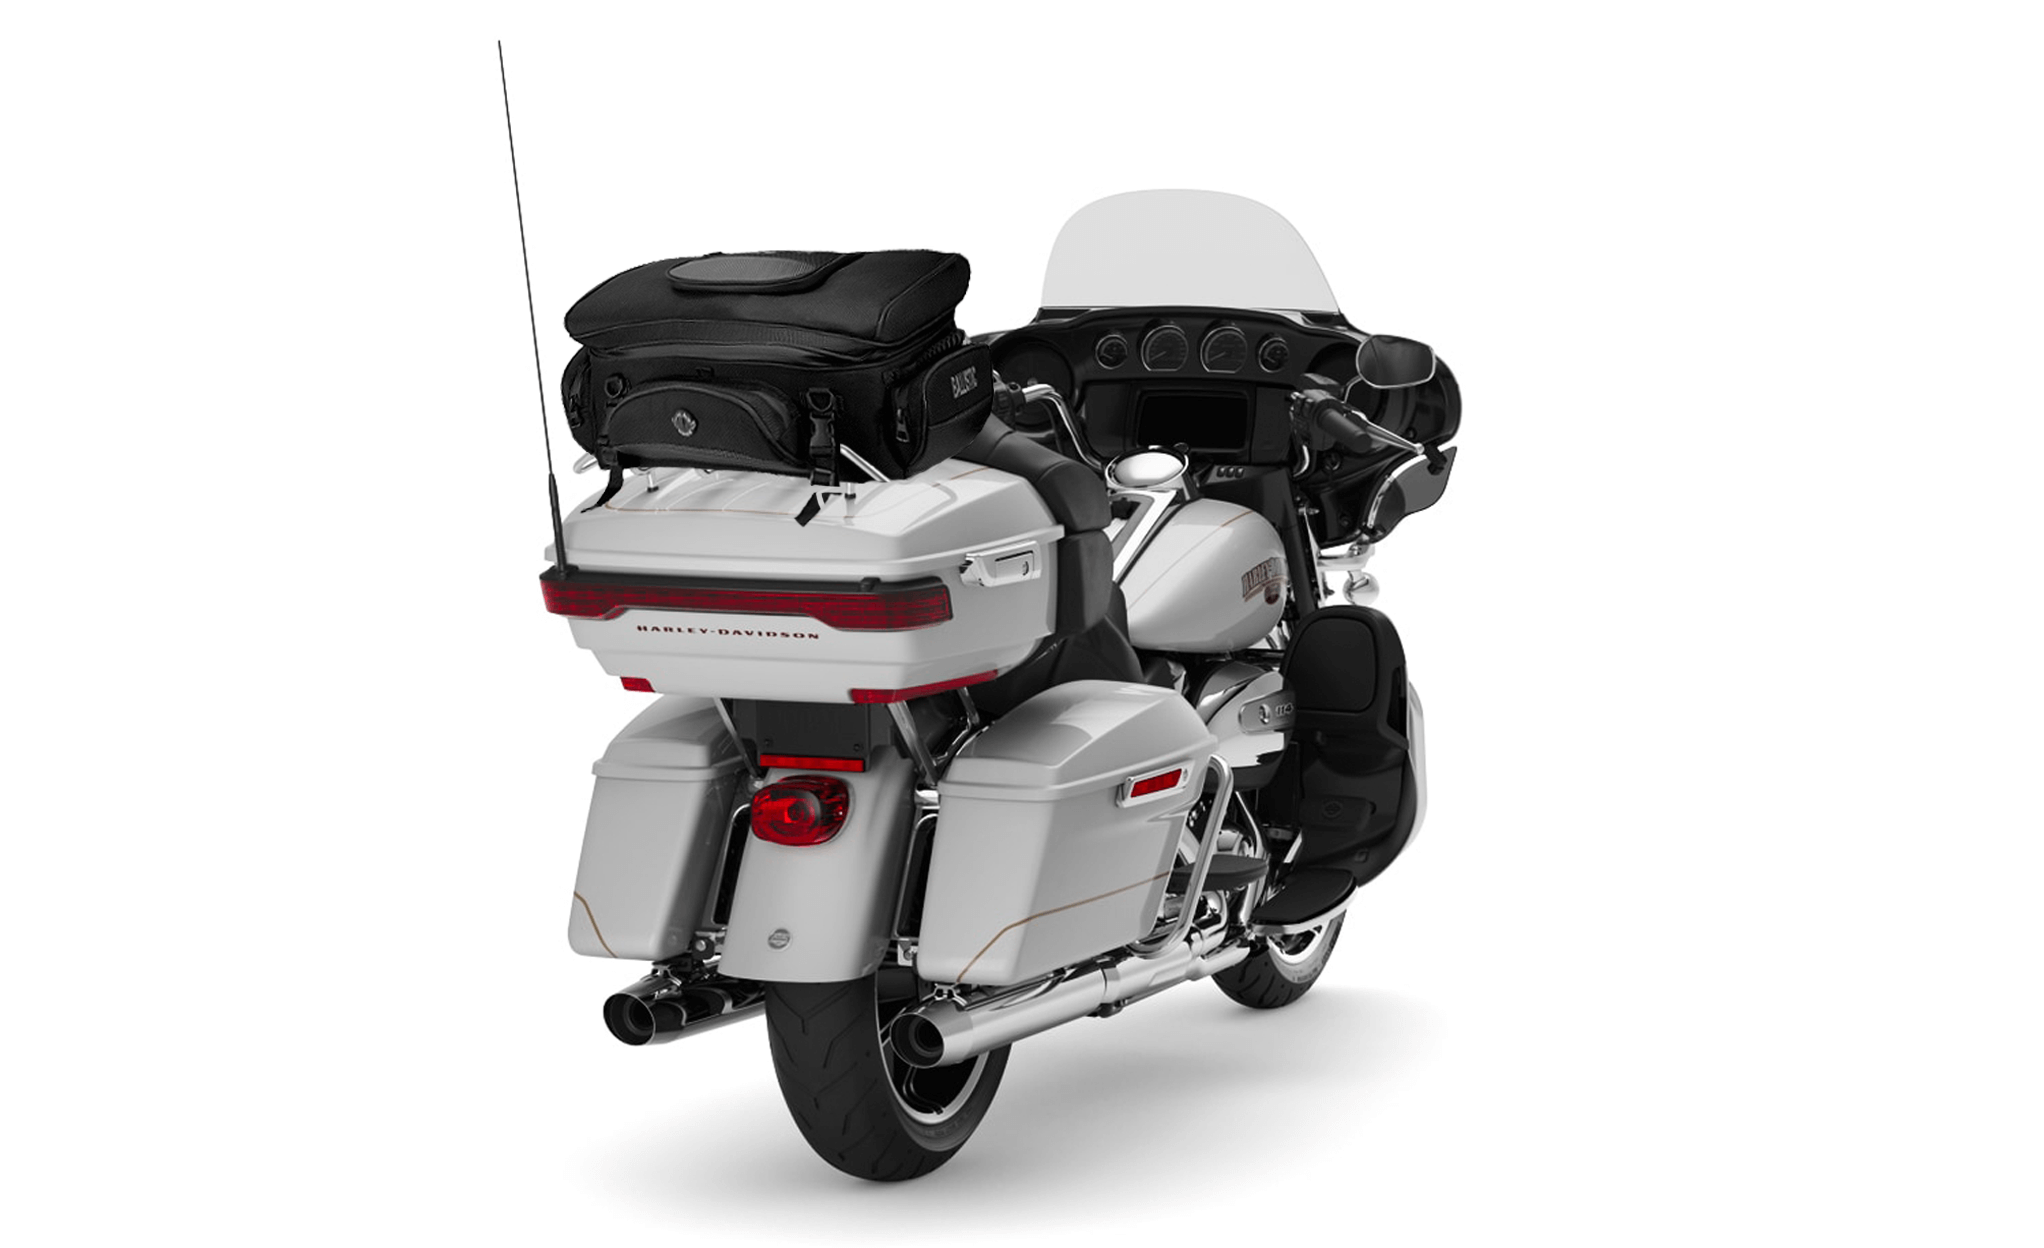 Viking Voyage Elite XL Suzuki Motorcycle Luggage Rack Bag Bag on Bike View @expand